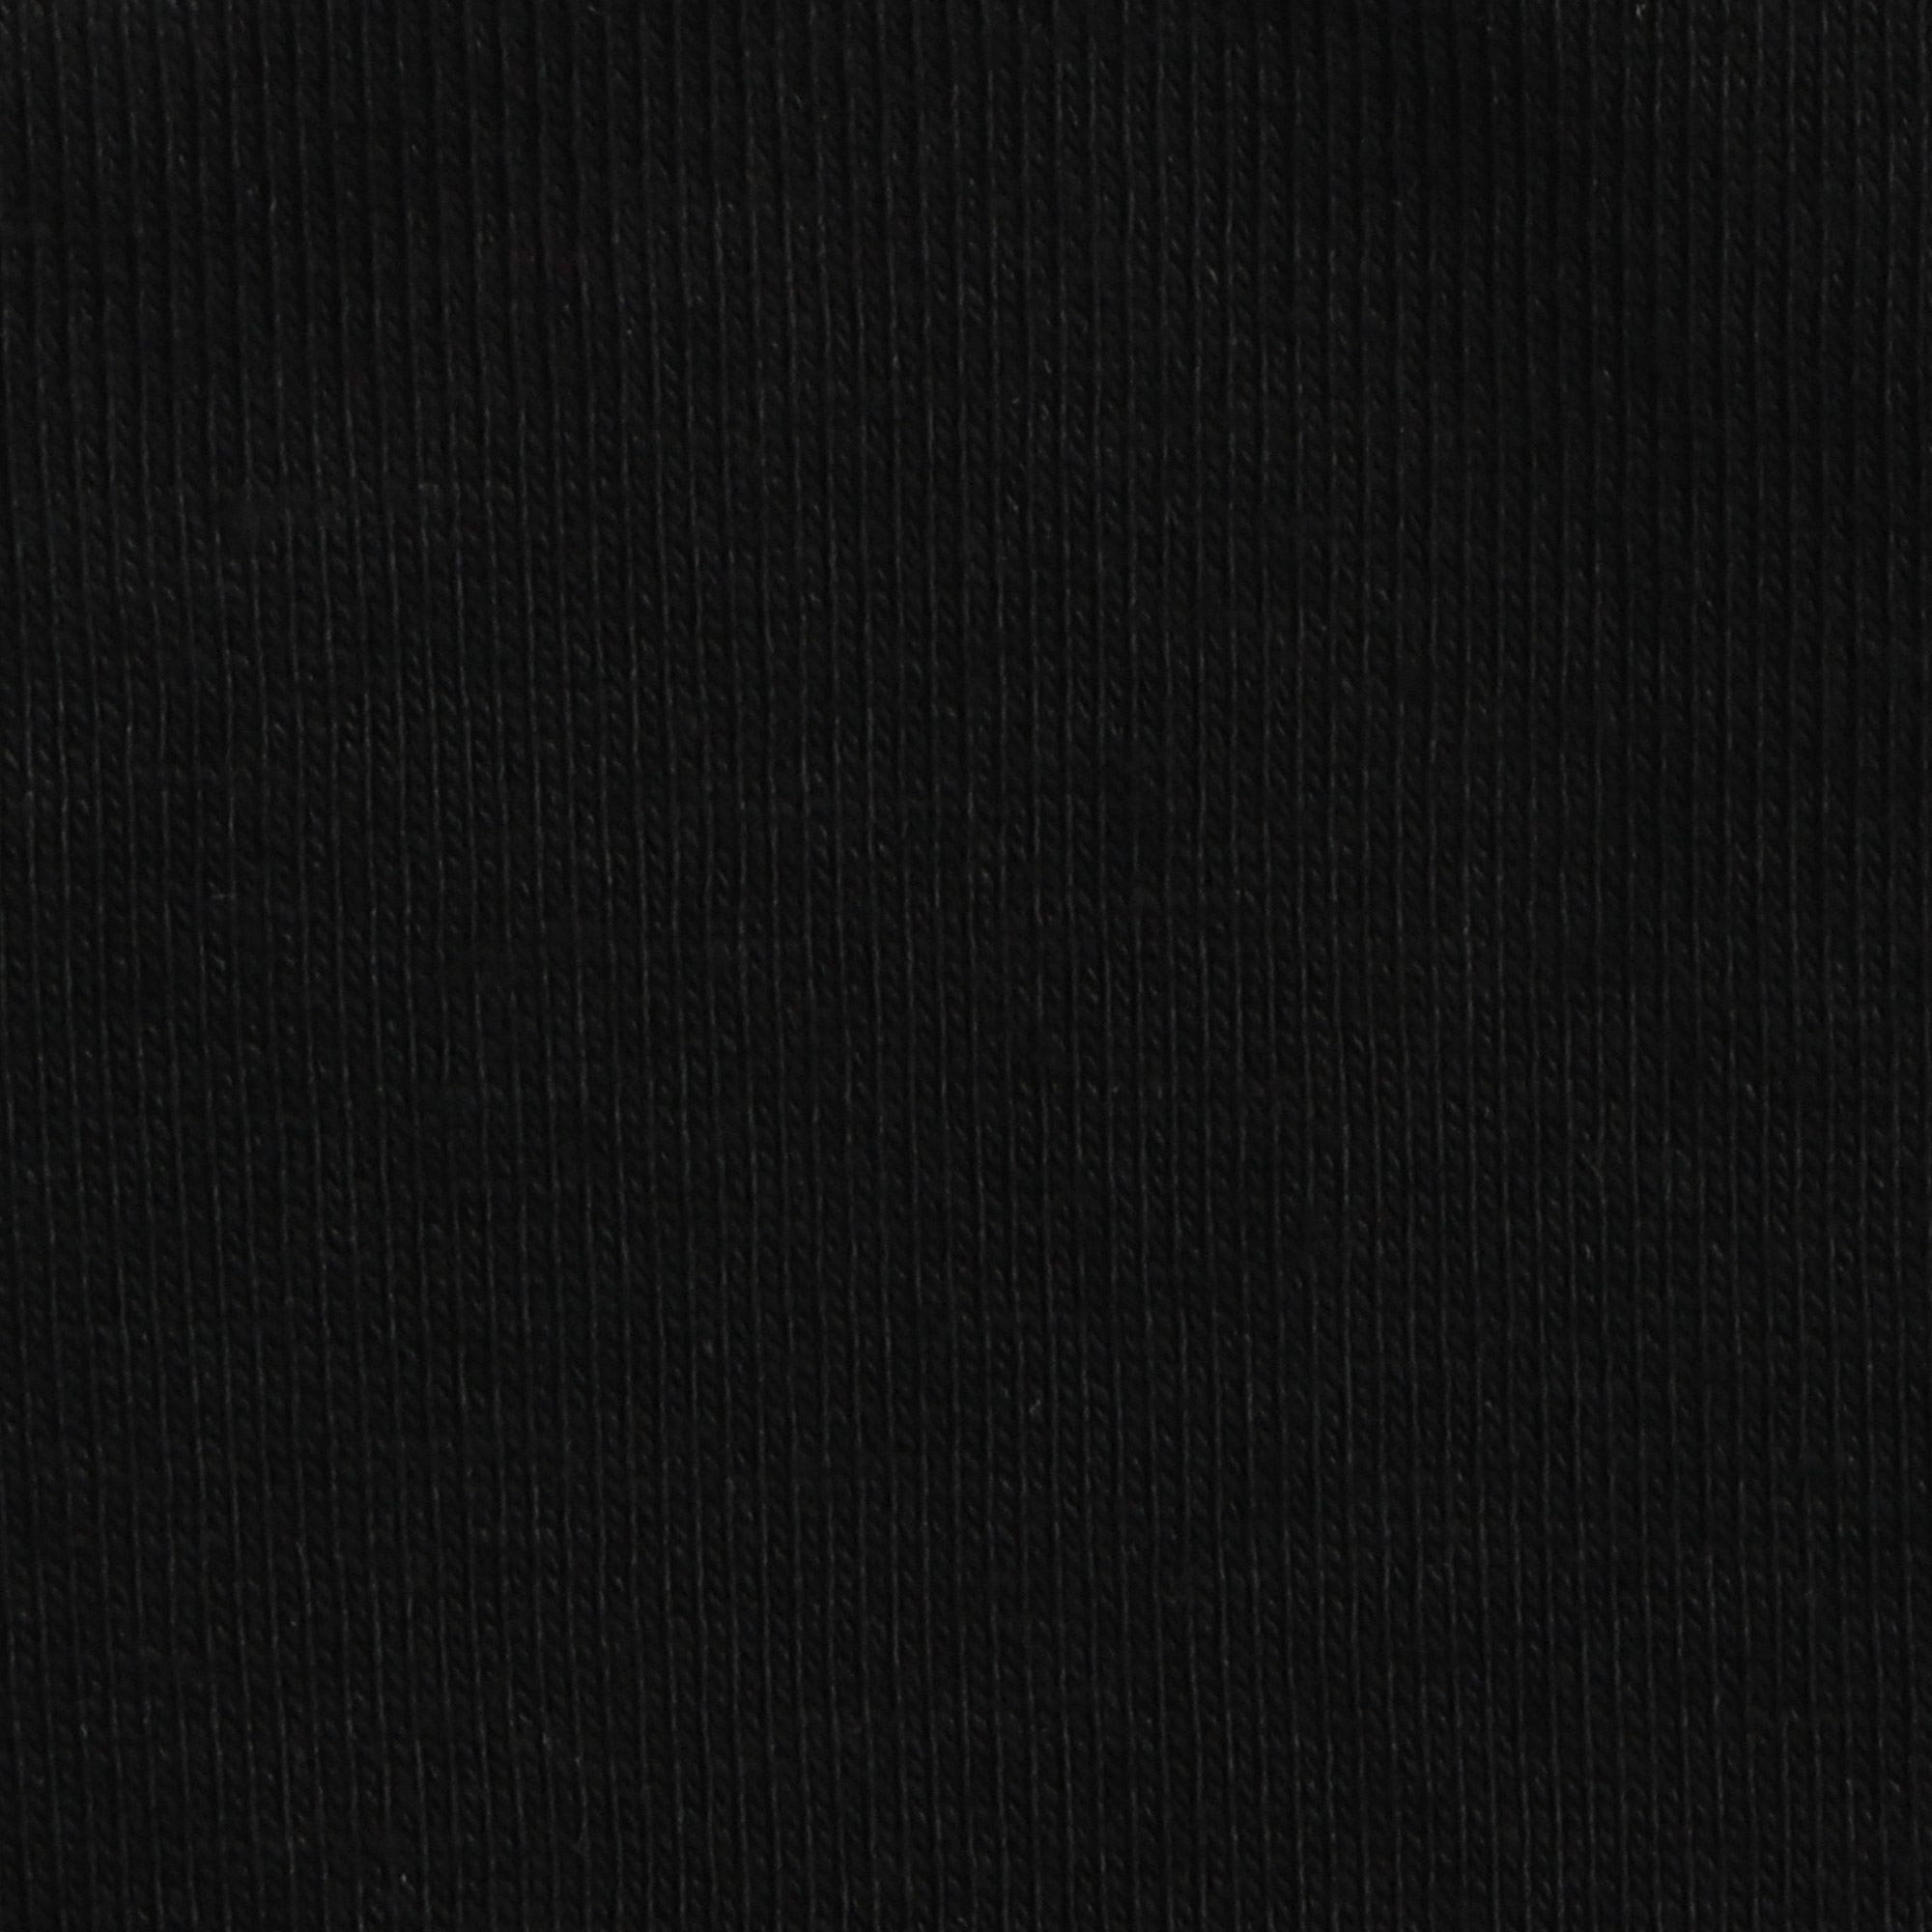 Футболка мужская AMADEY черная с коротким рукавом L, цвет черный, размер L - фото 3